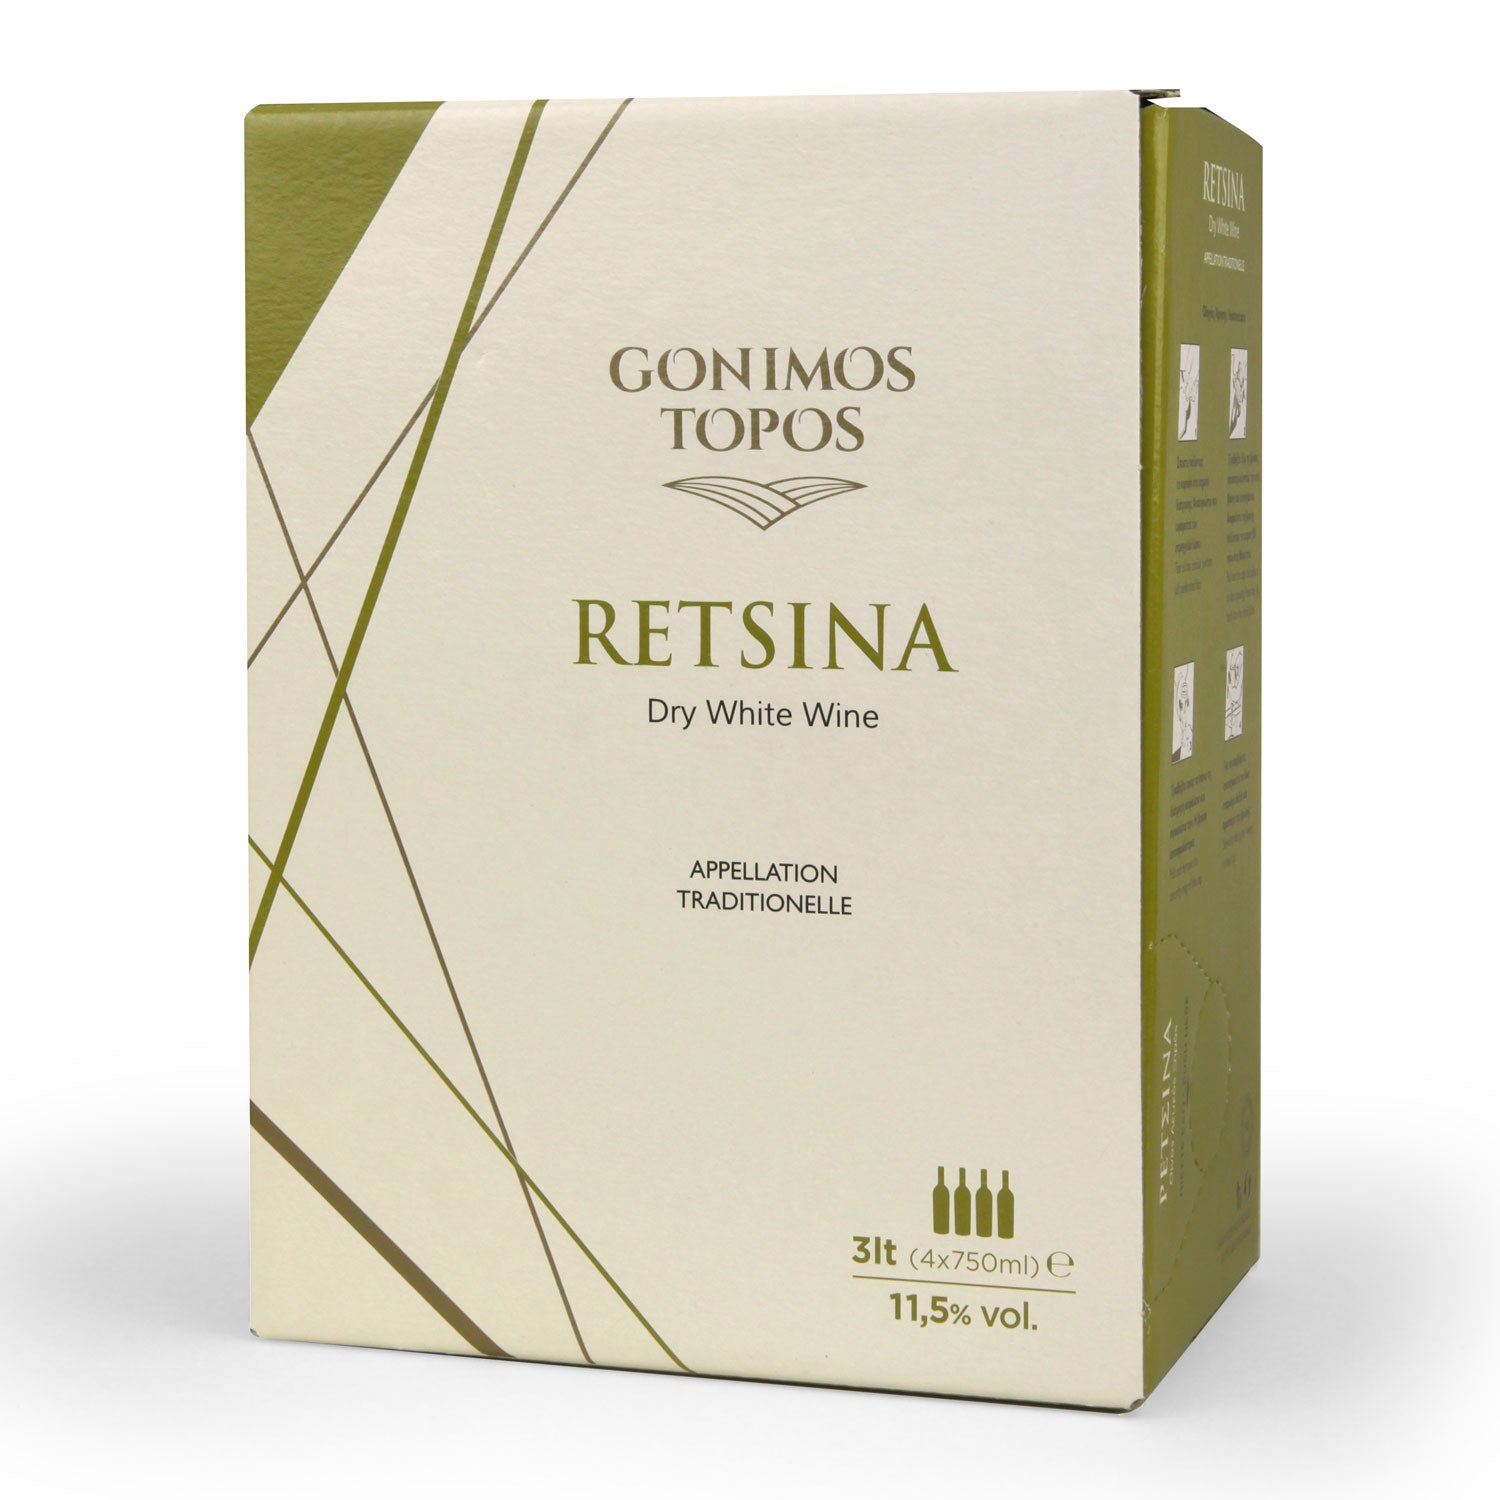 Premium white Retsina Gonimos Topos - 3L